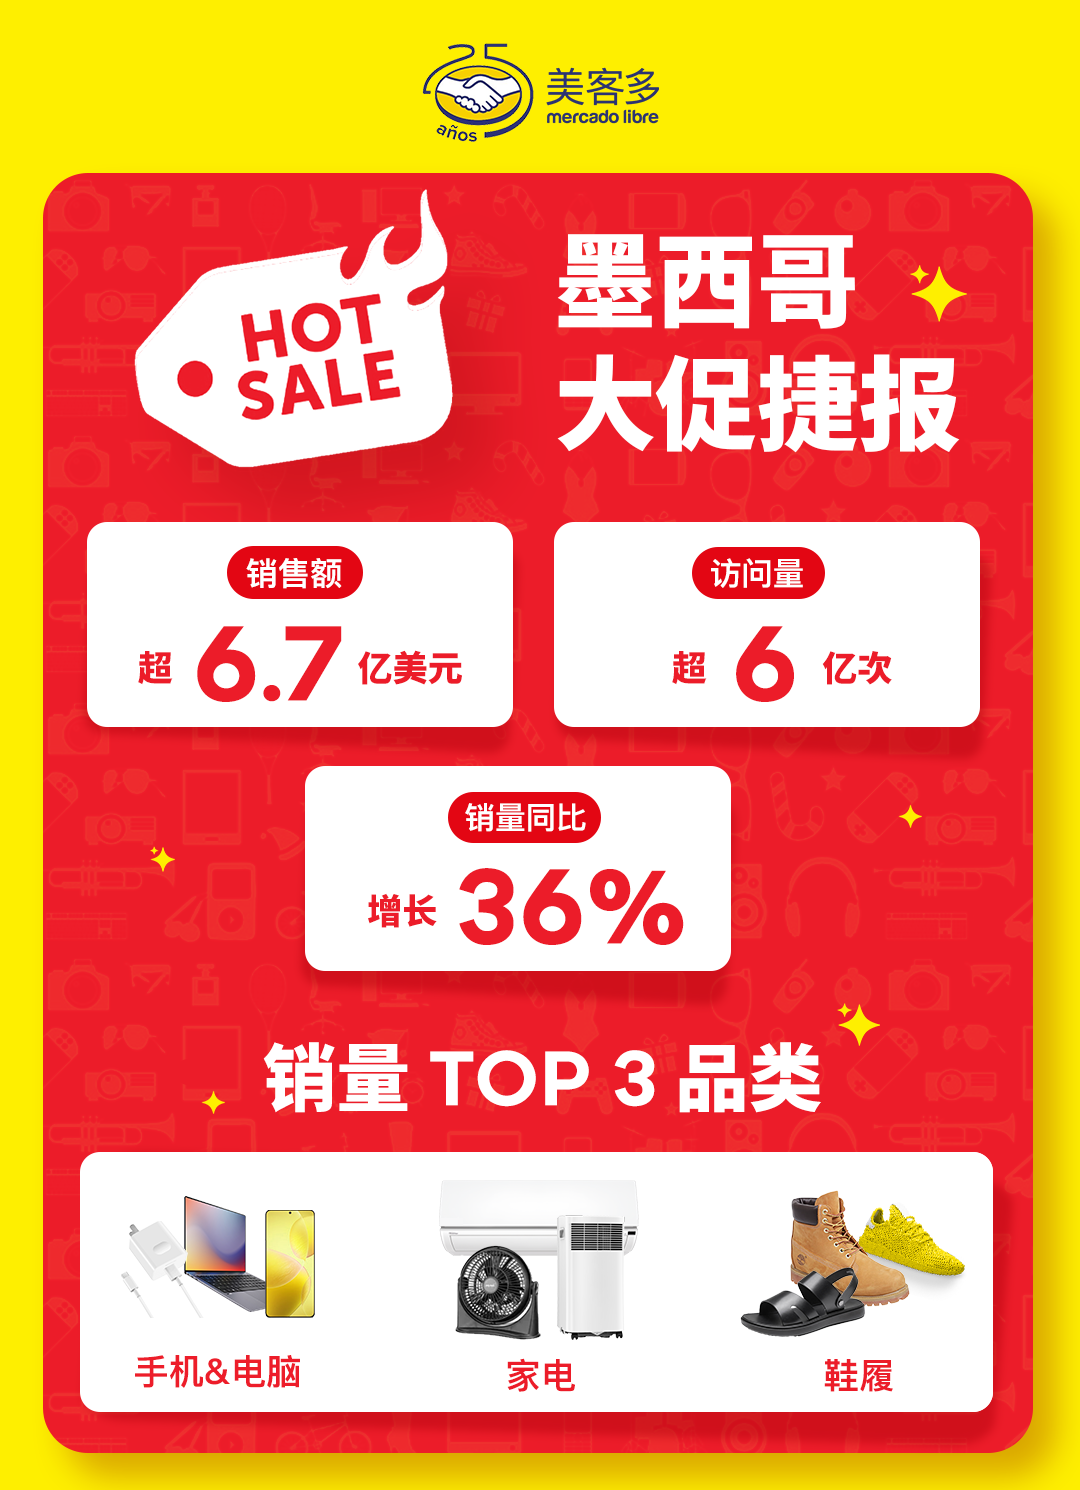 美客多HOT SALE大促销售额超6.7亿美元，中国卖家强势增长！